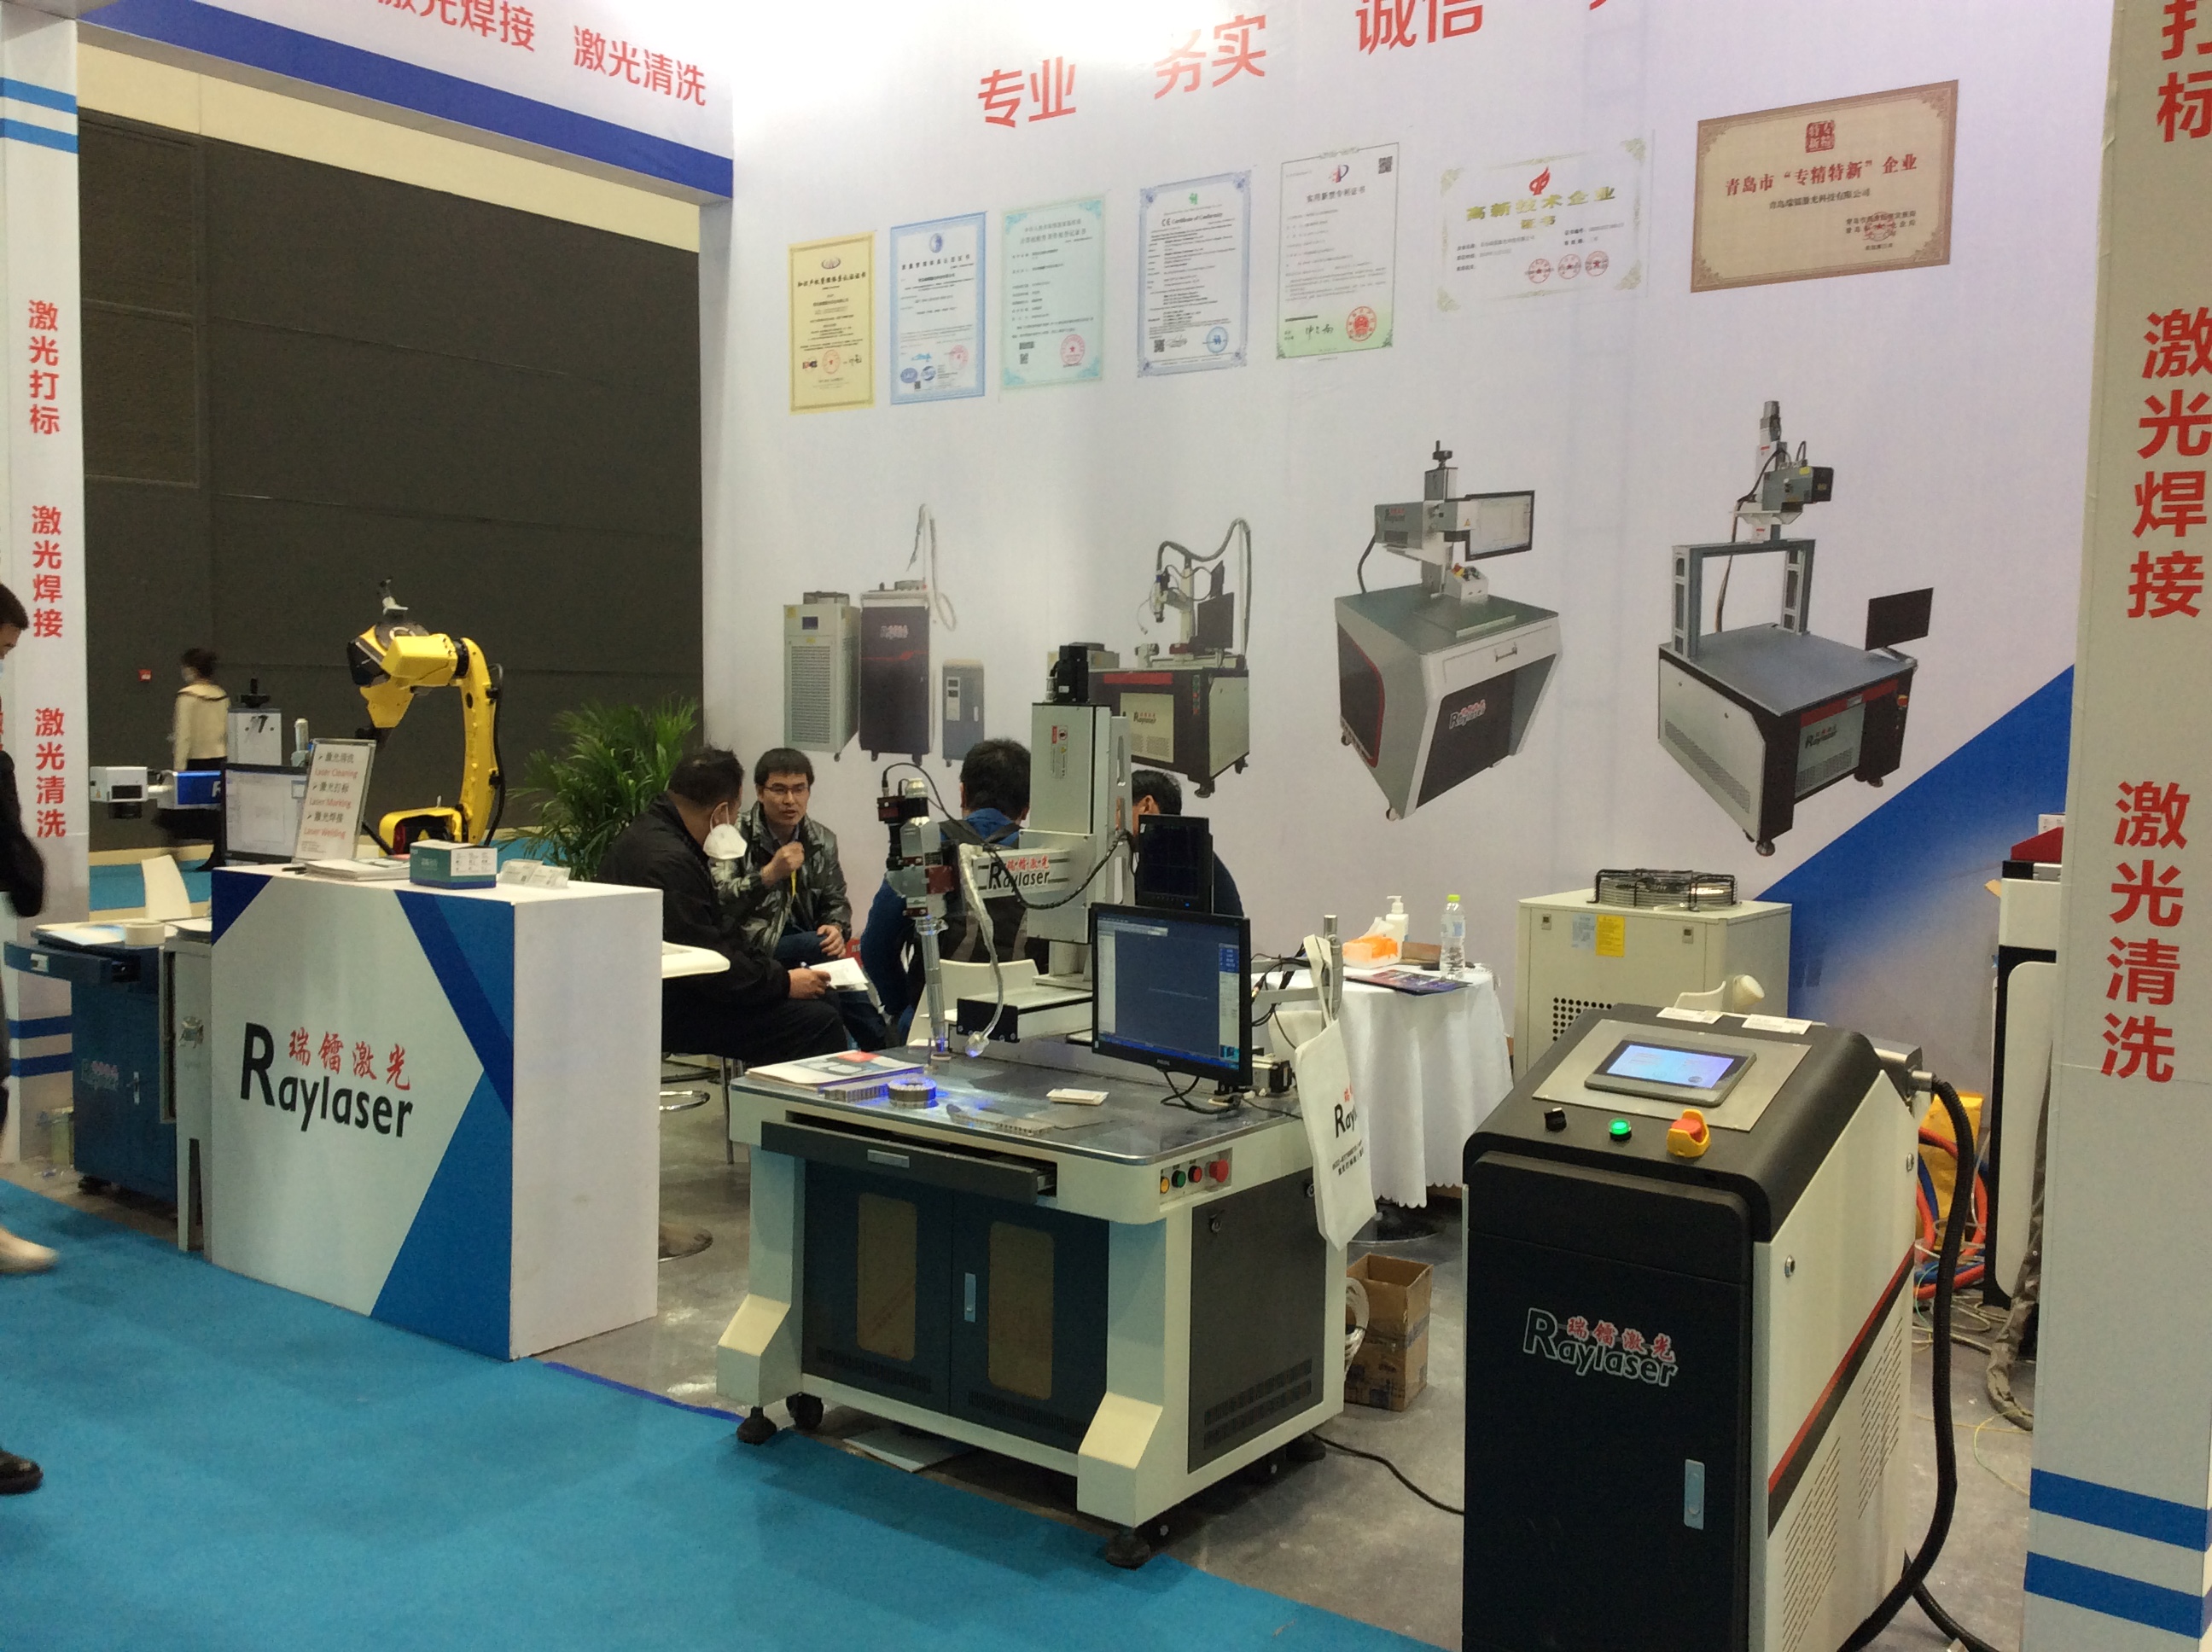 第19届青岛国际金属加工设备及技术博览会正在进行